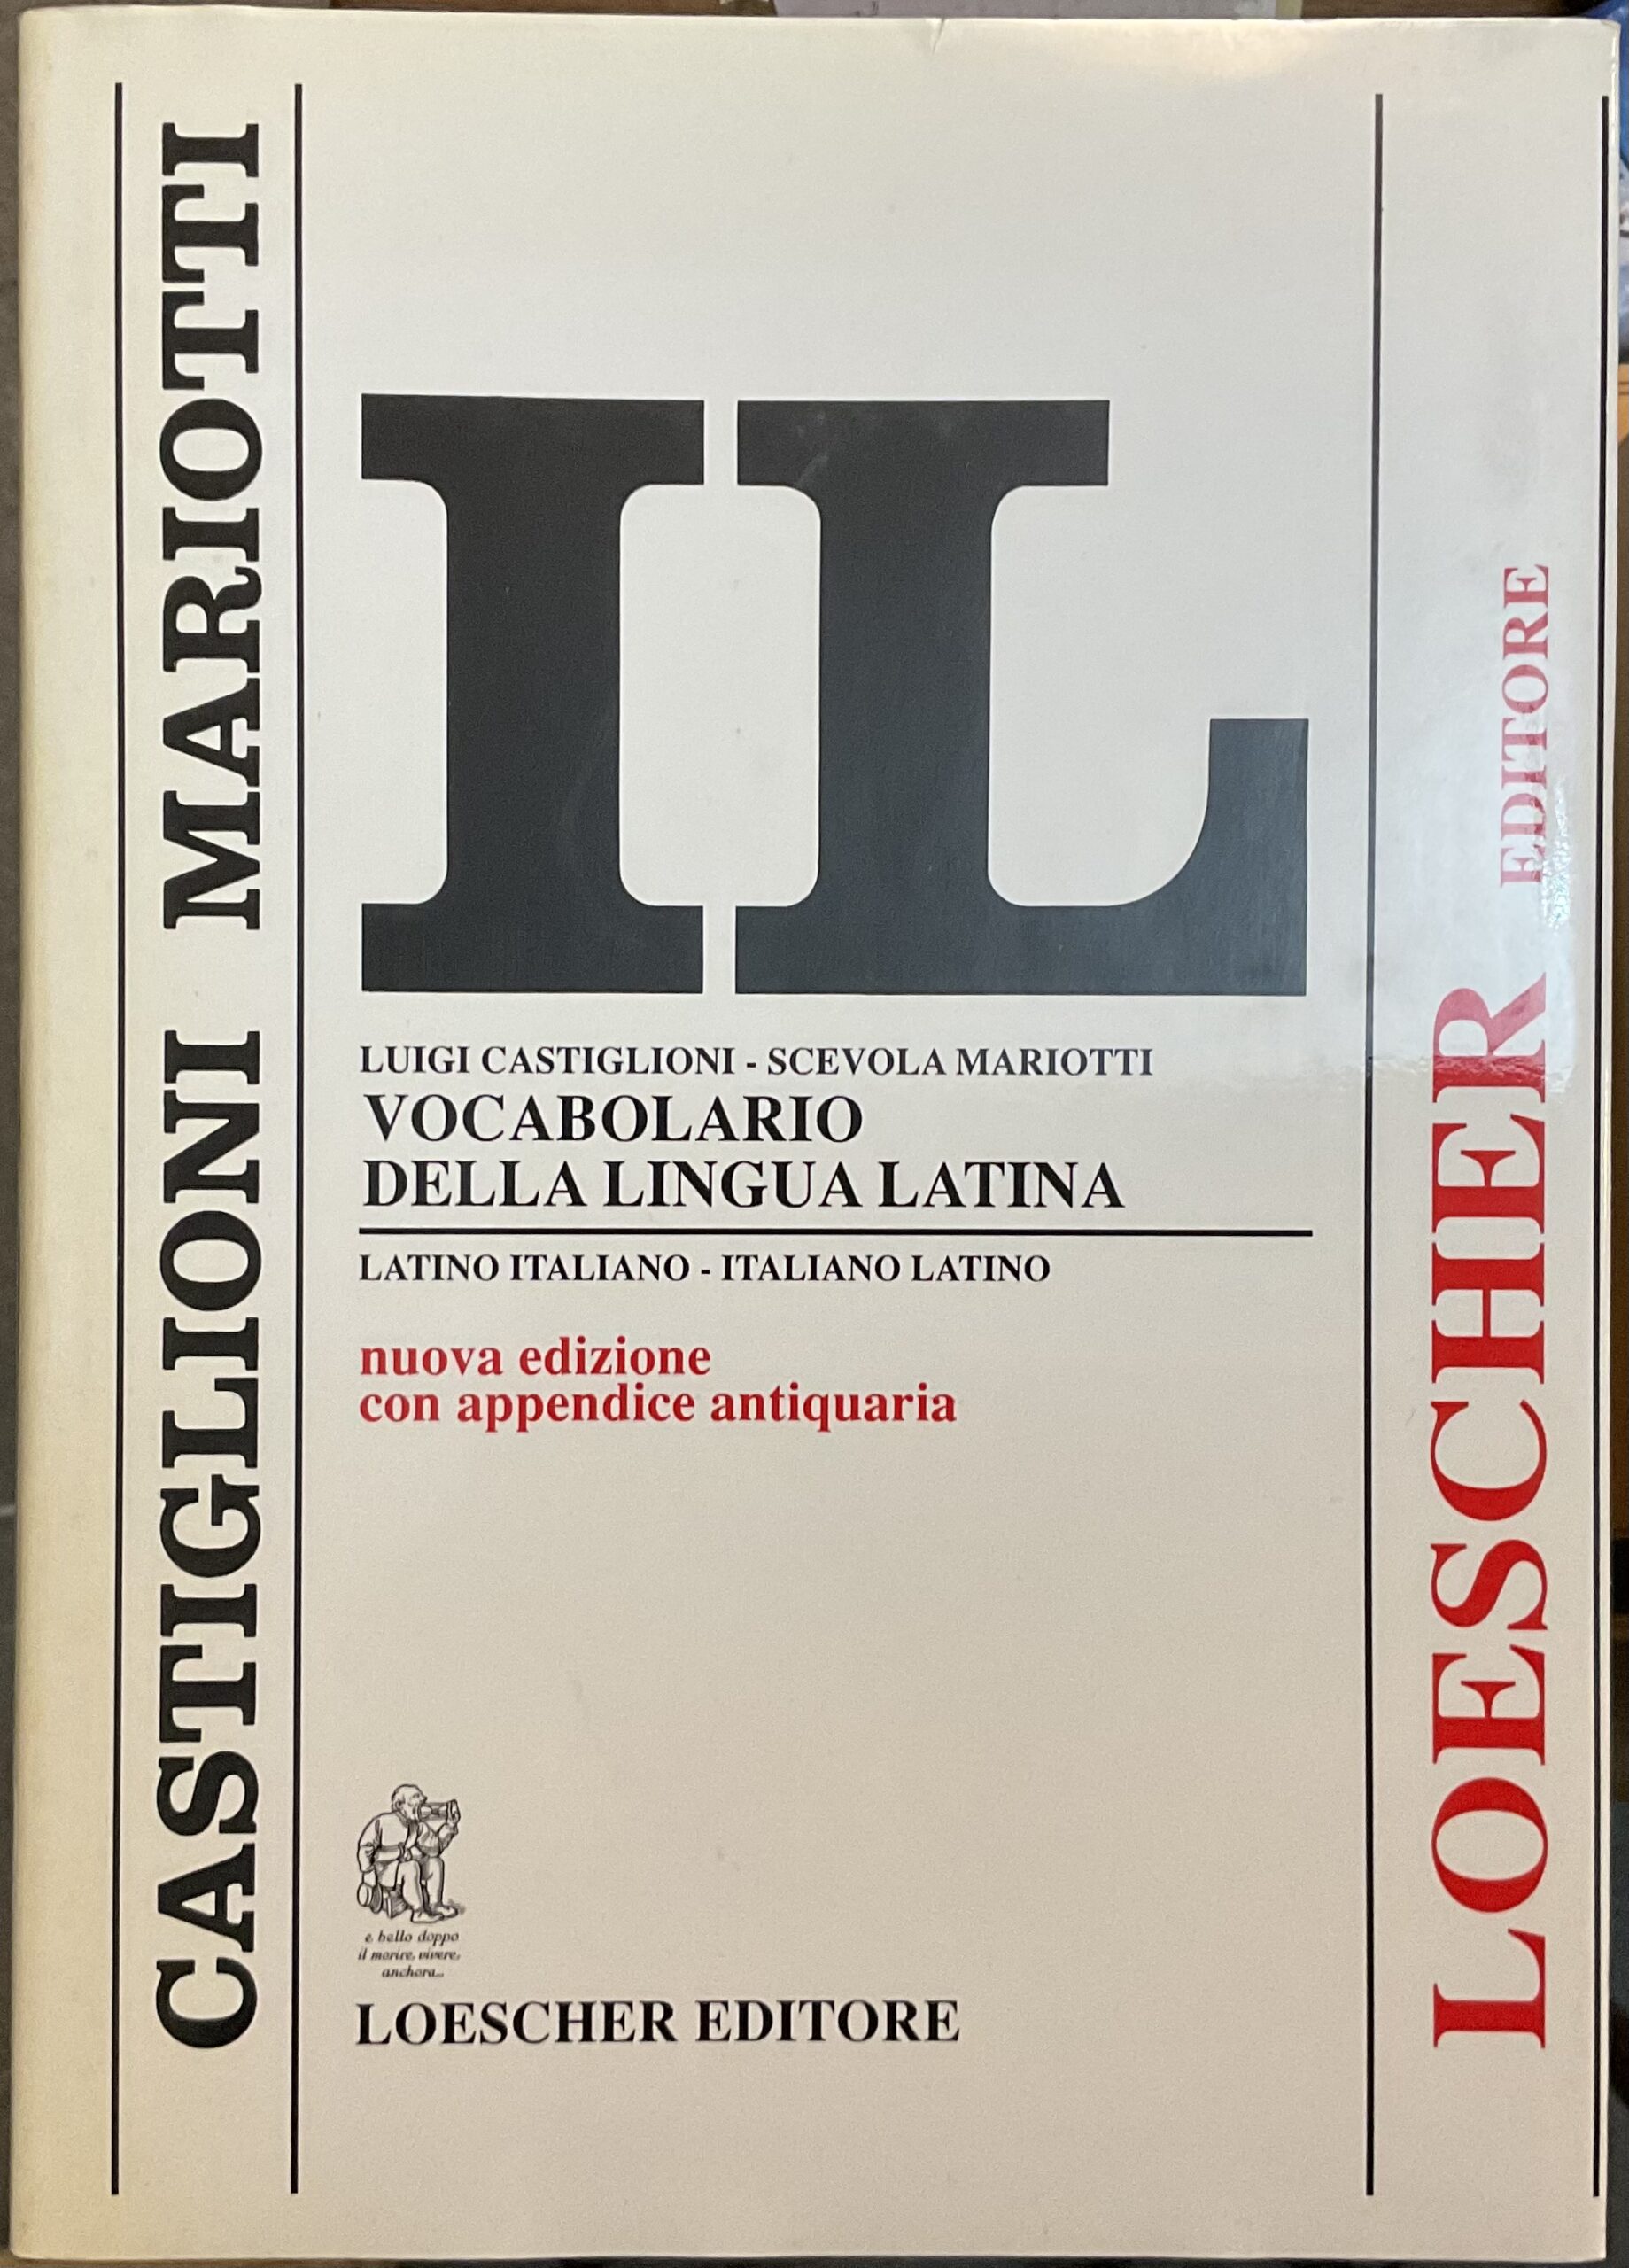 Vocabolario dizionario latino italiano - Libri e Riviste In